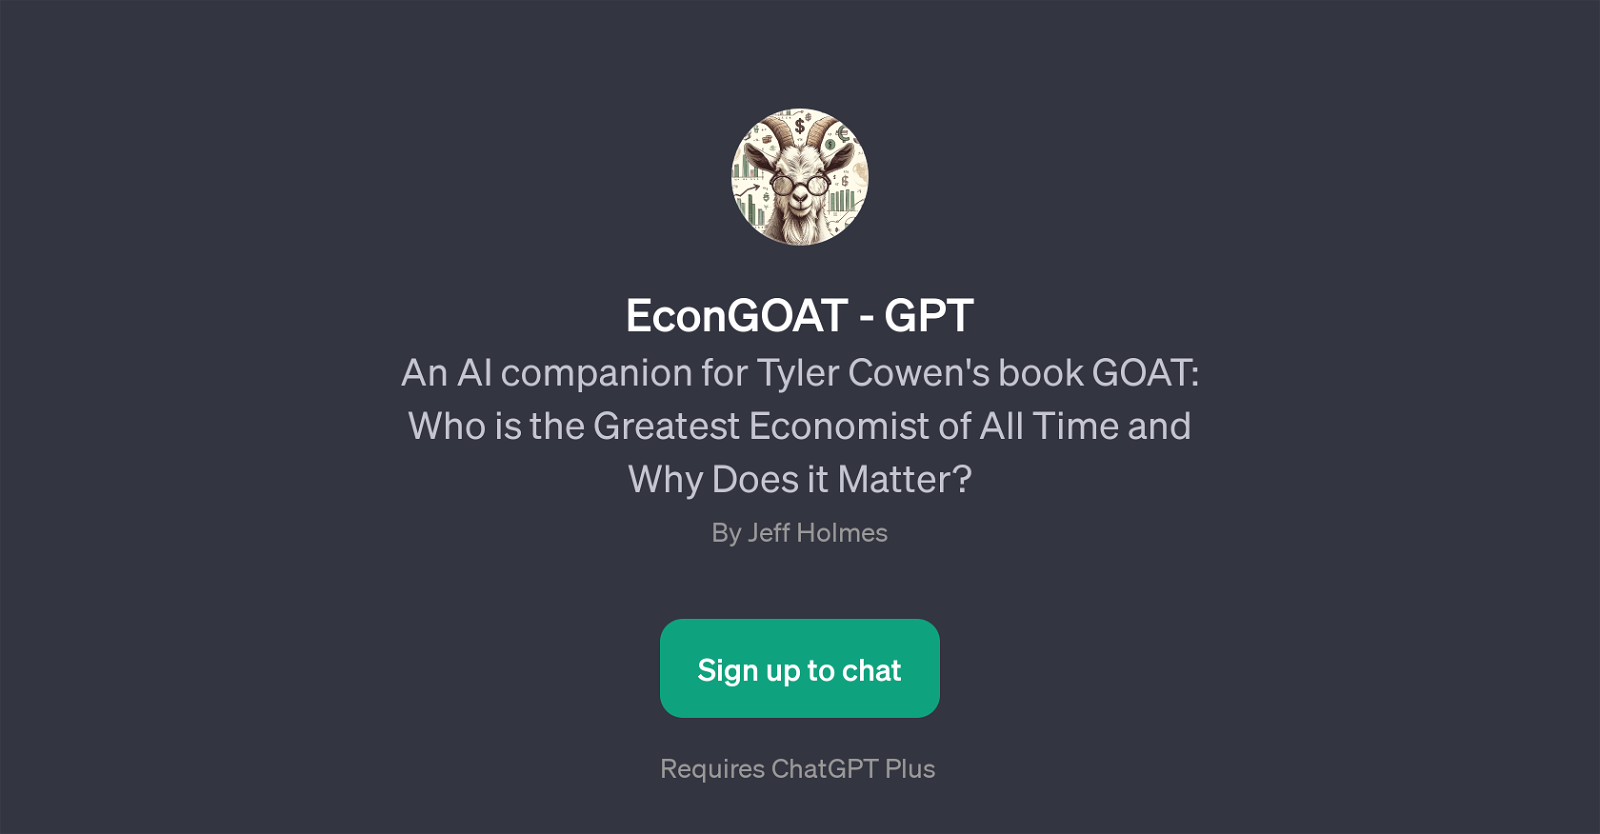 EconGOAT - GPT website